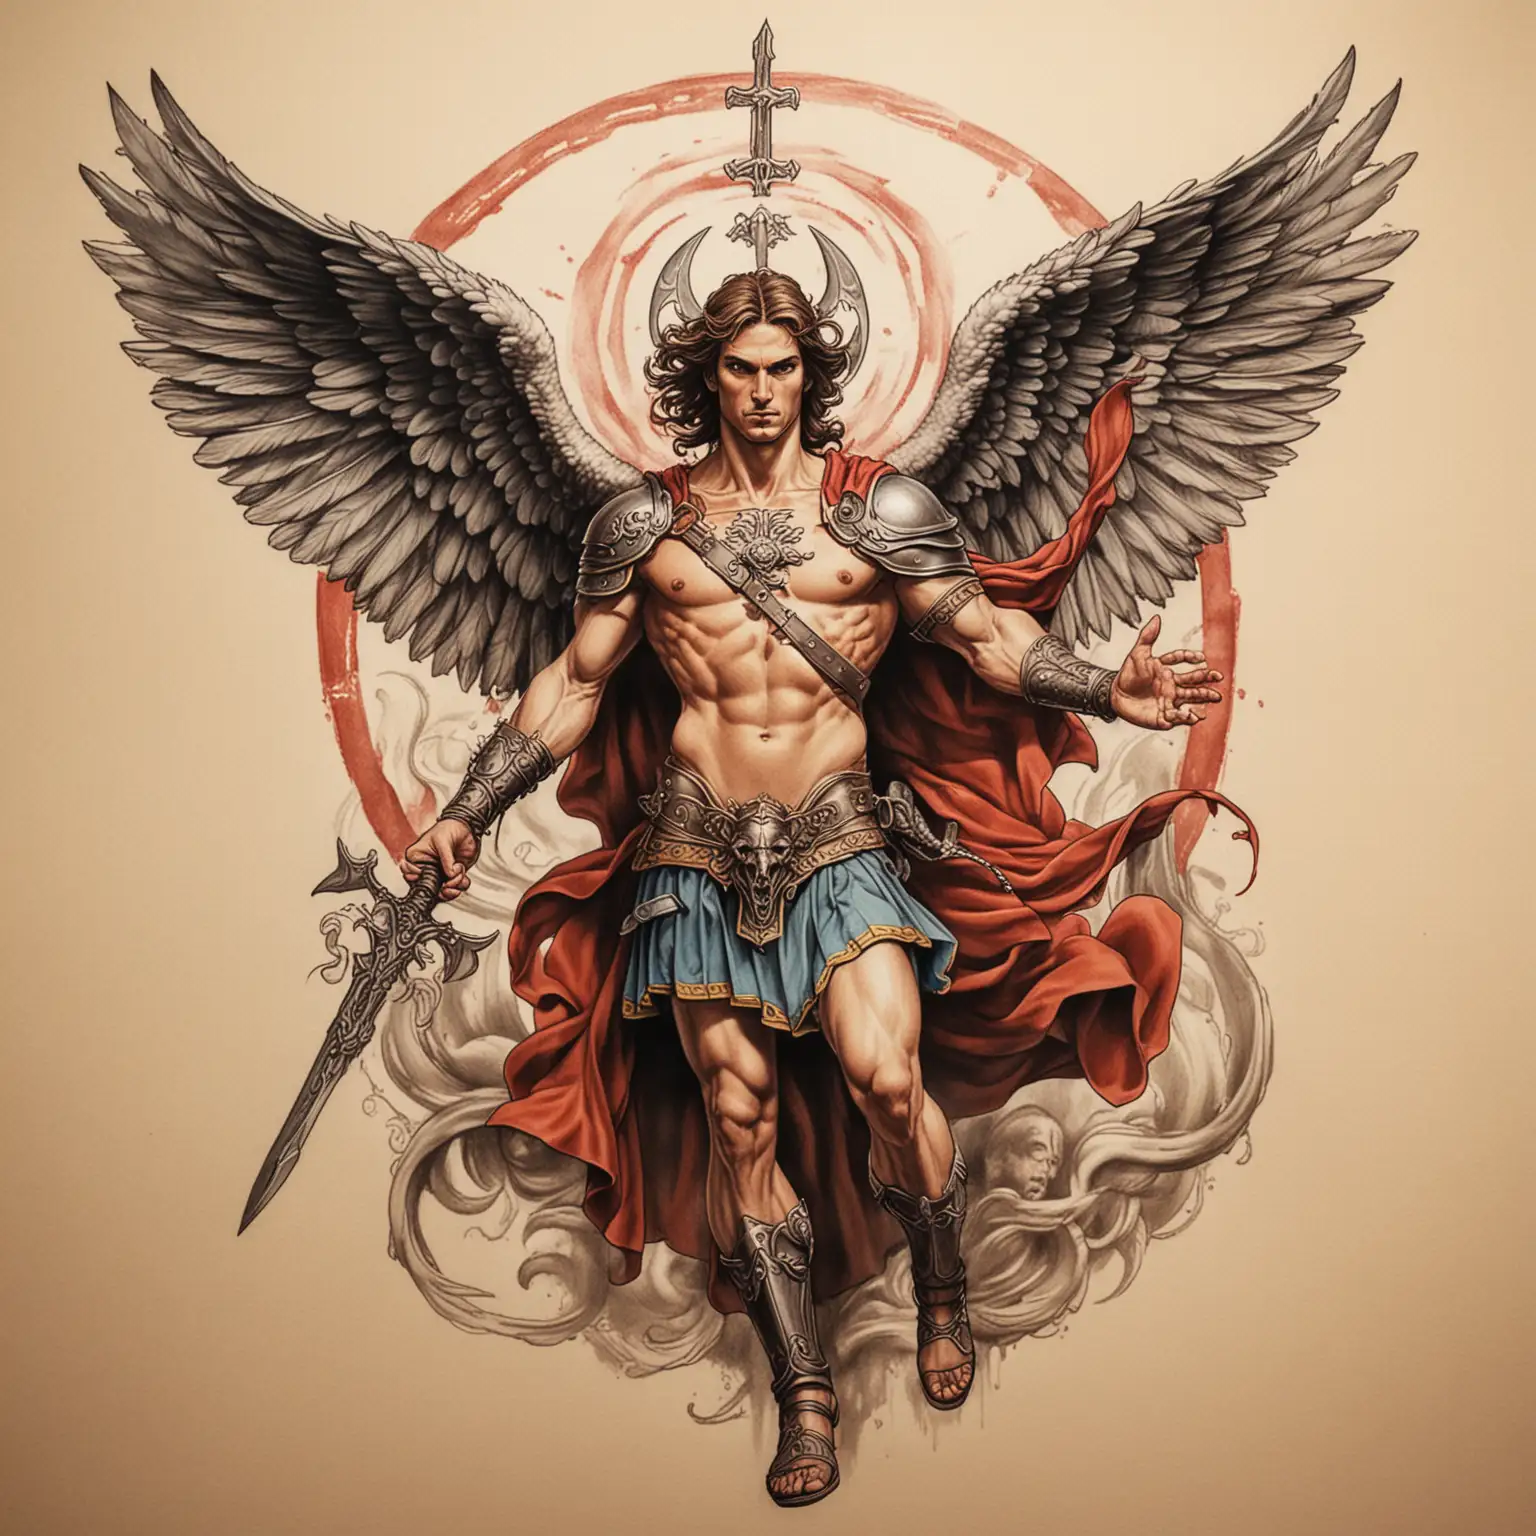 tatto sketch, ilustrate the saint Michael killing satan, colored